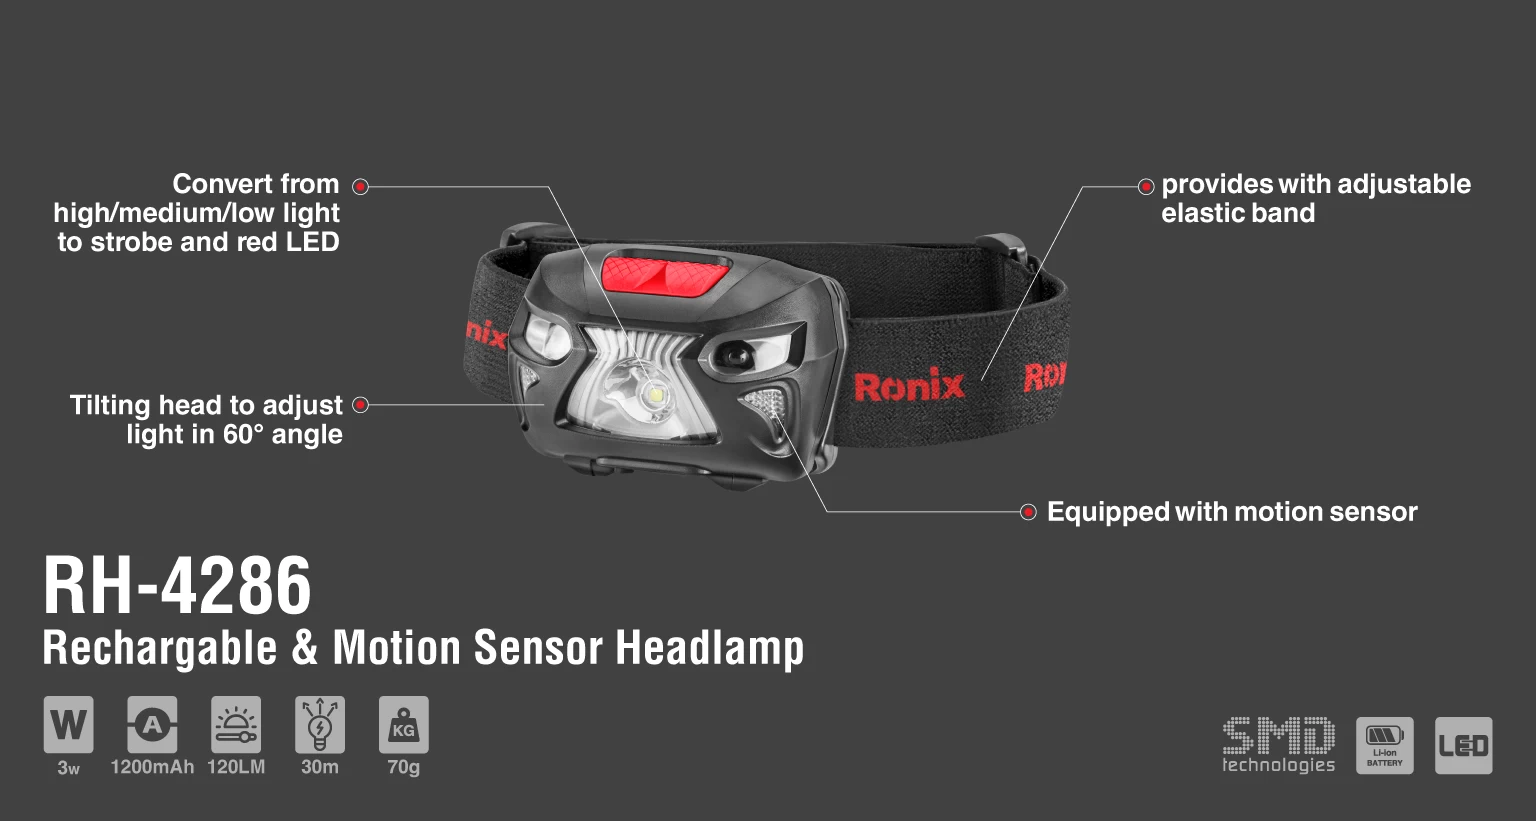 3w Rechargable & Motion sensor headlamp 120LM_details